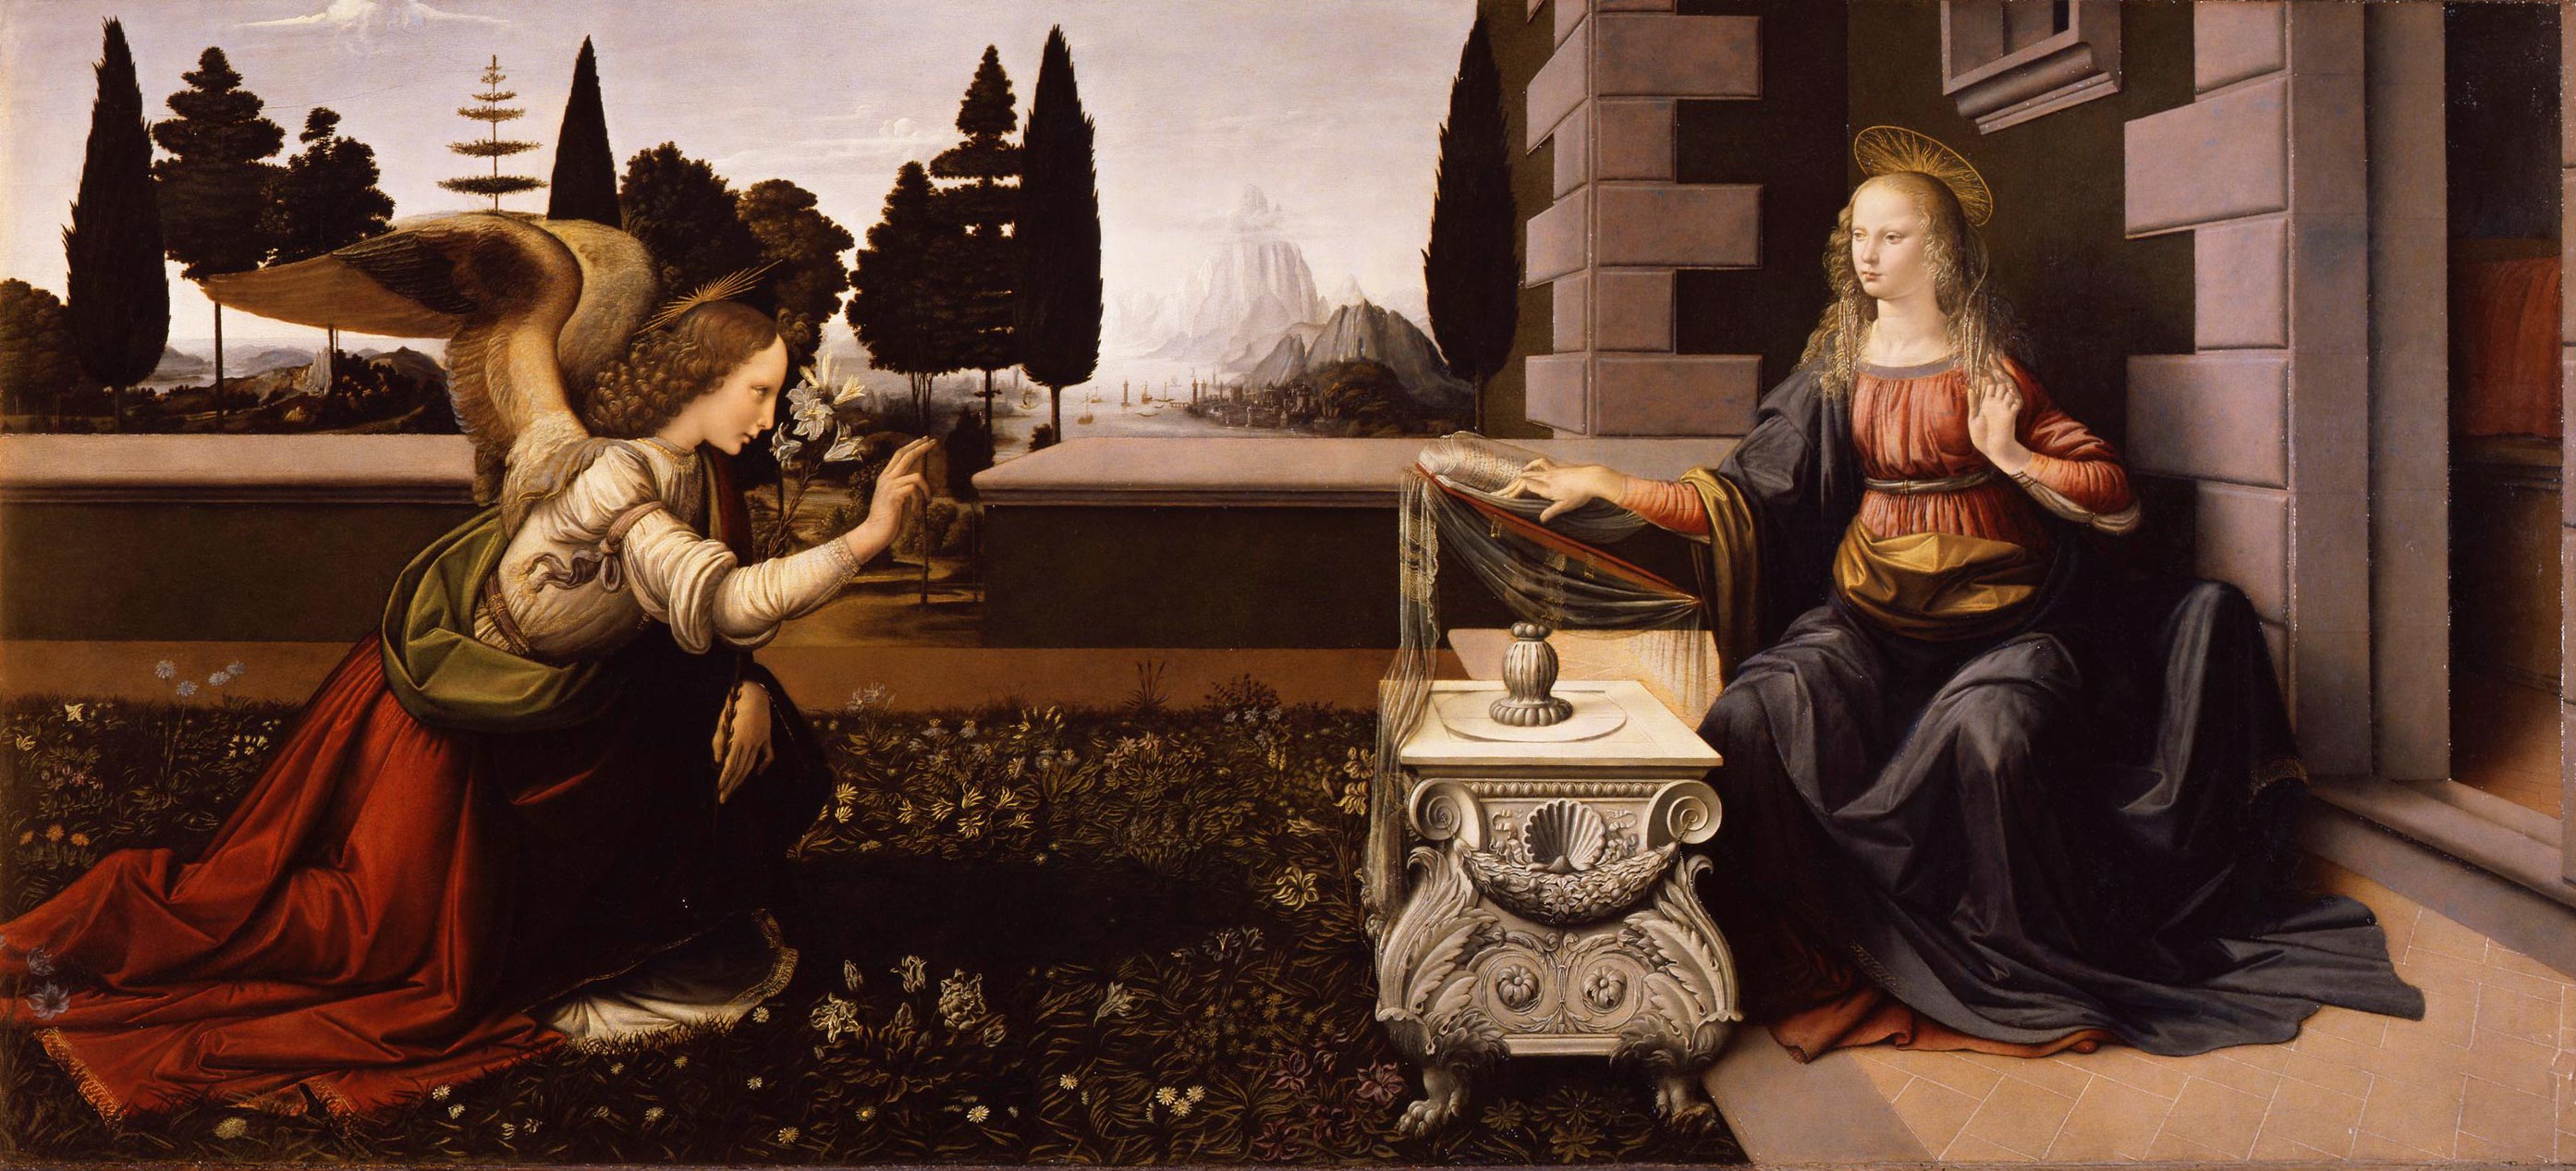 Leonardo da Vinci, Annunciazione (1472 circa; olio su tavola, 90 x 222 cm; Firenze, Galleria degli Uffizi, inv. 1890 n. 1618)
